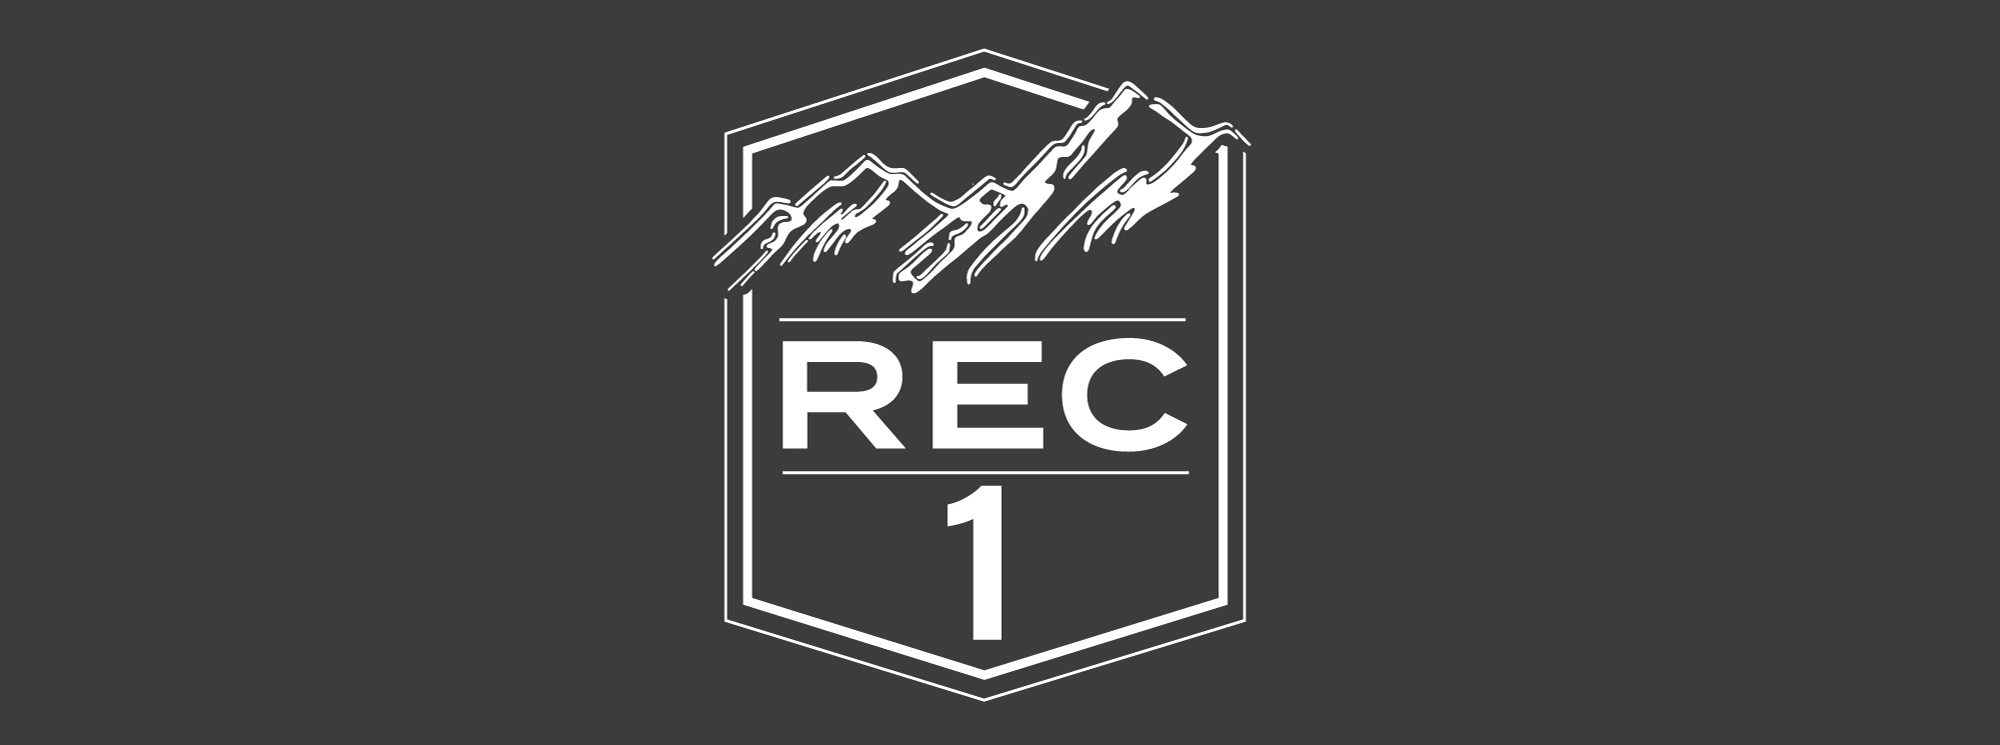 Rec 1 logo